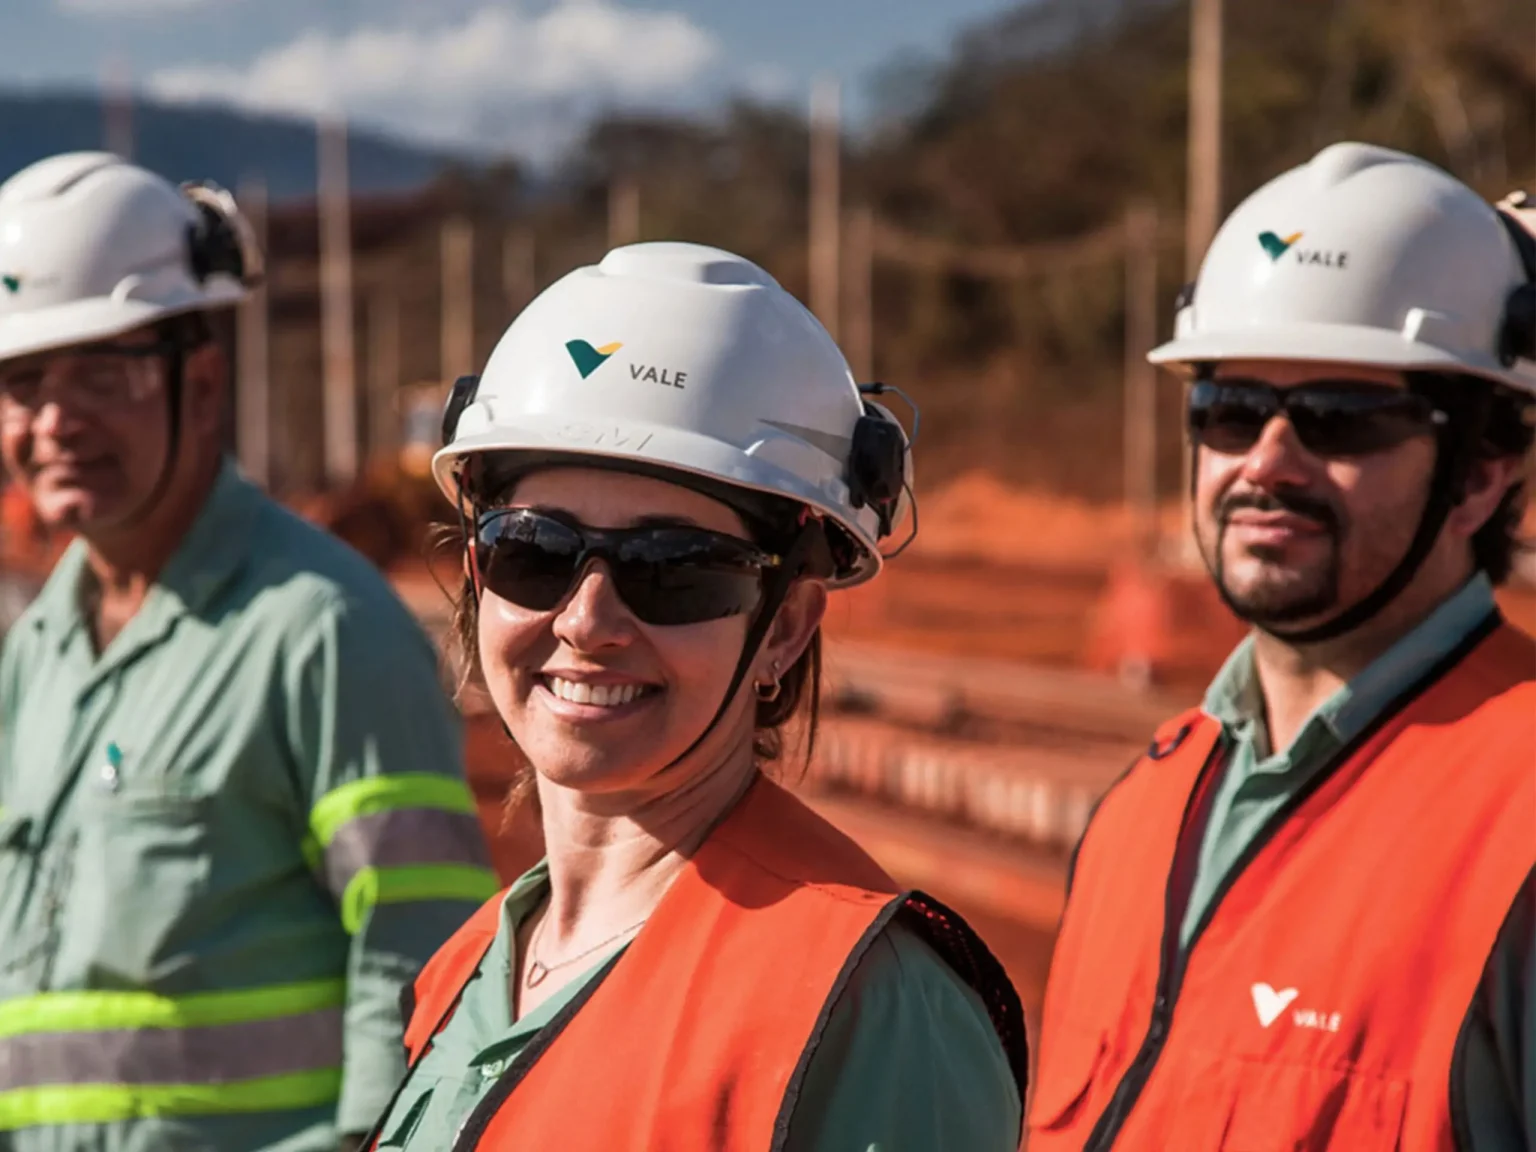 Mineradora Vale conta com mais de 200 vagas de emprego em todo o Brasil